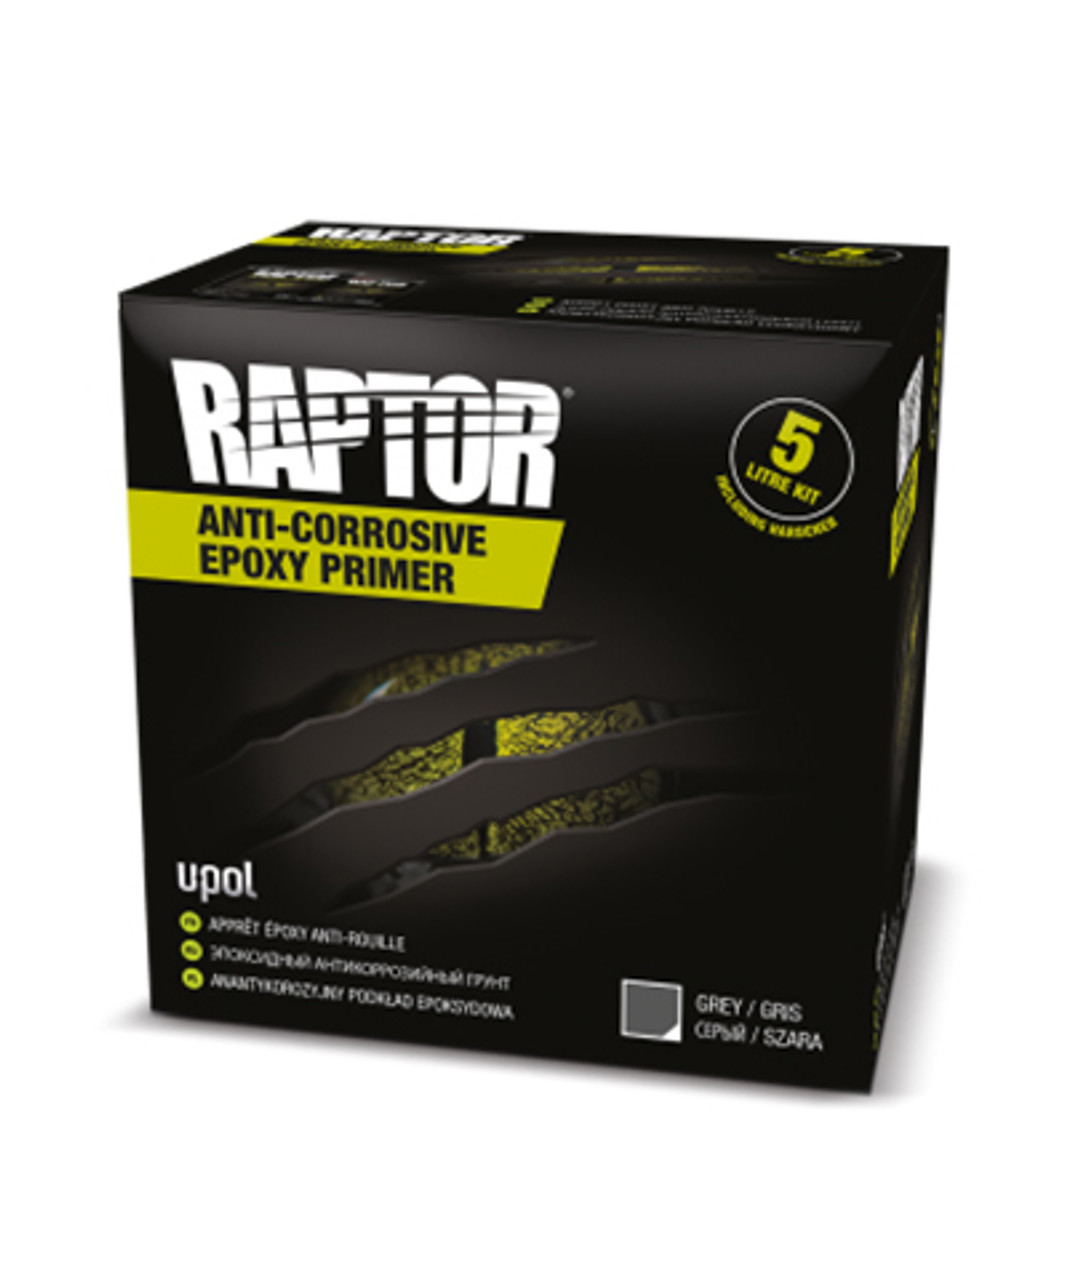 Upol Raptor Anti-Corrosive Epoxy Primer Kit 5Lt